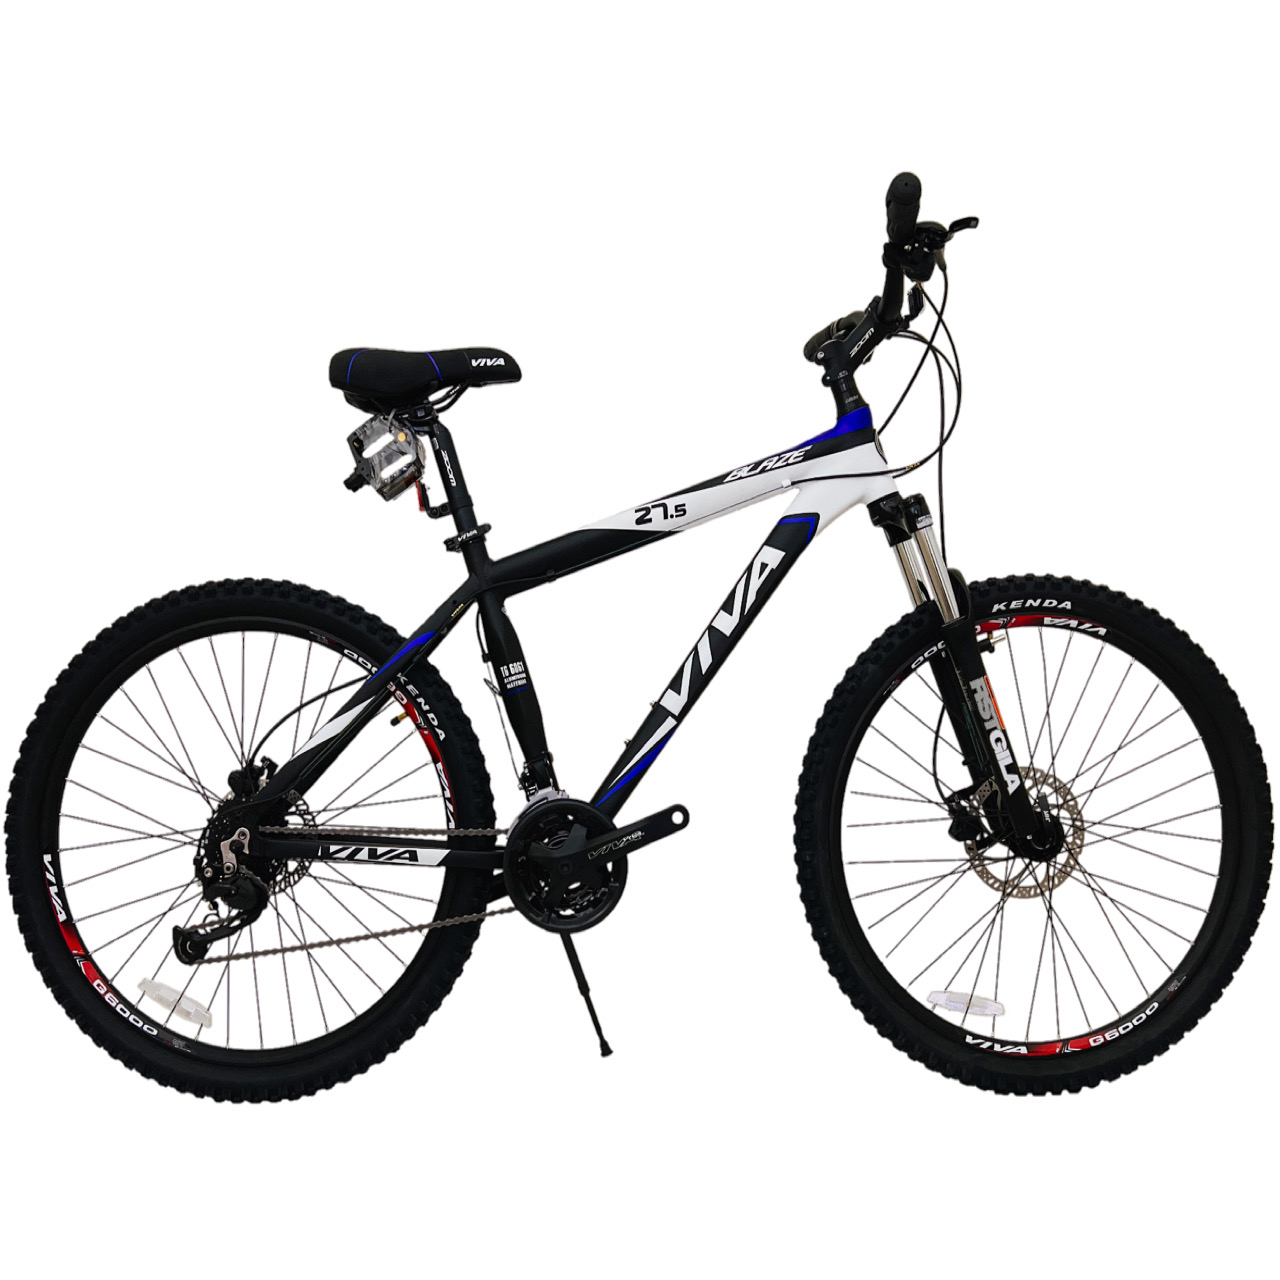 نکته خرید - قیمت روز دوچرخه کوهستان ویوا مدل BLAZE کد 27 سایز 27.5 خرید